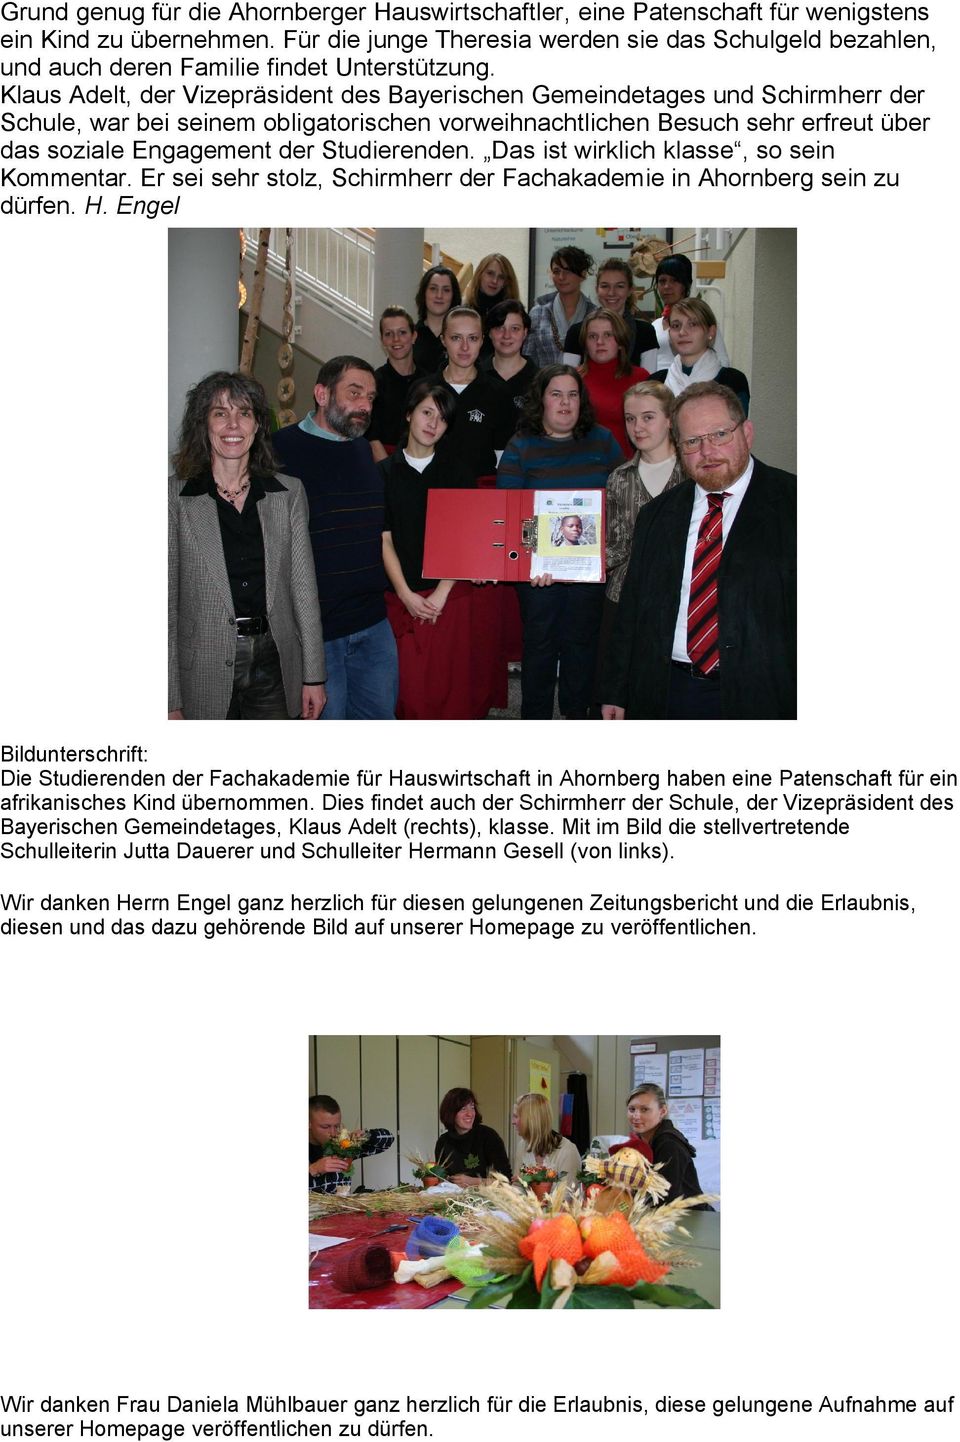 Klaus Adelt, der Vizepräsident des Bayerischen Gemeindetages und Schirmherr der Schule, war bei seinem obligatorischen vorweihnachtlichen Besuch sehr erfreut über das soziale Engagement der